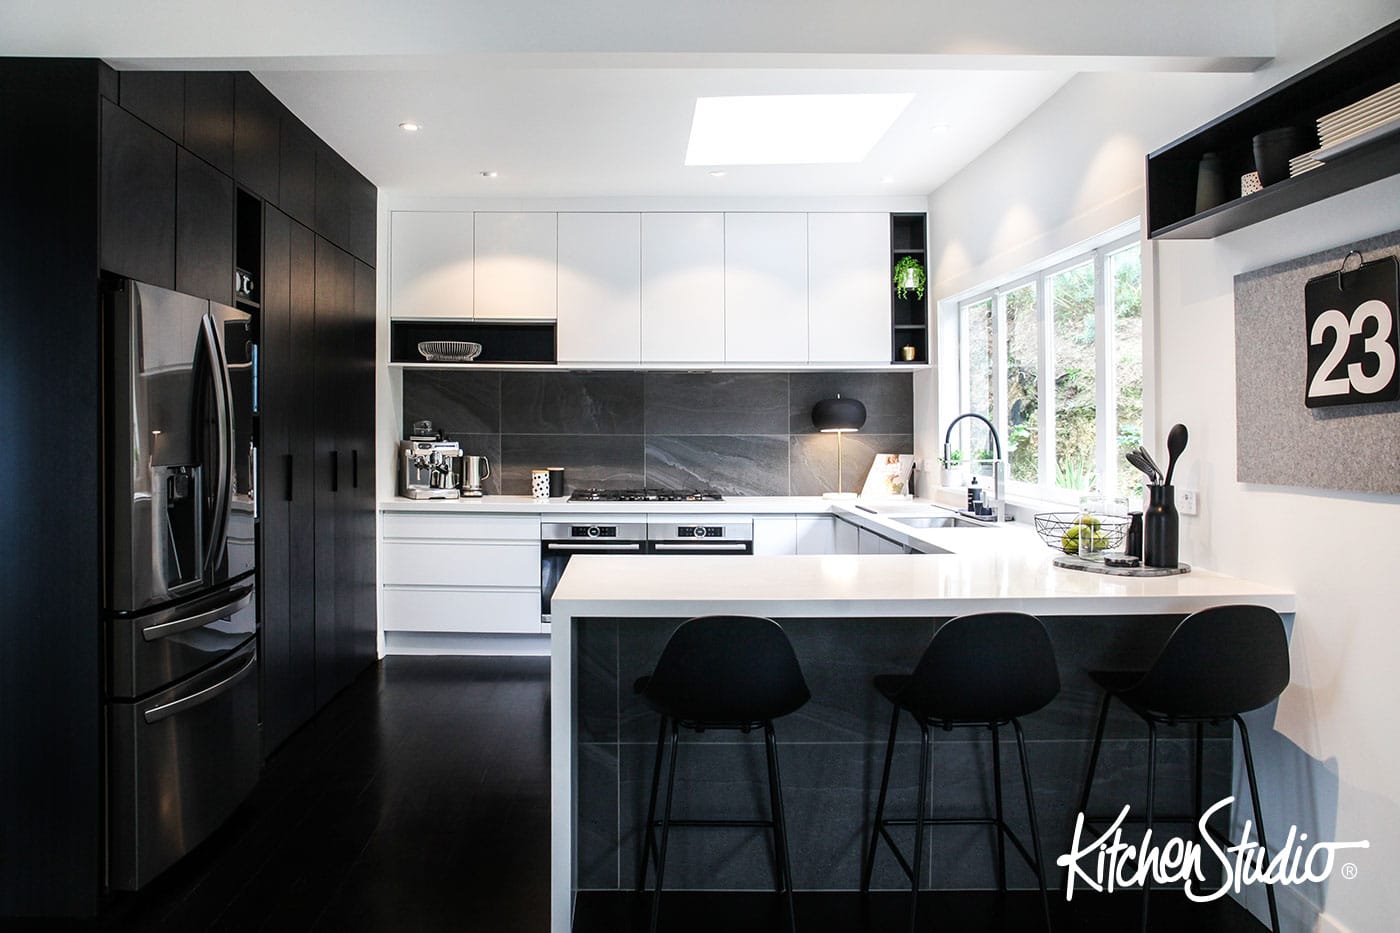  Kitchen Design Gallery Be Inspired by Kitchen Studio 